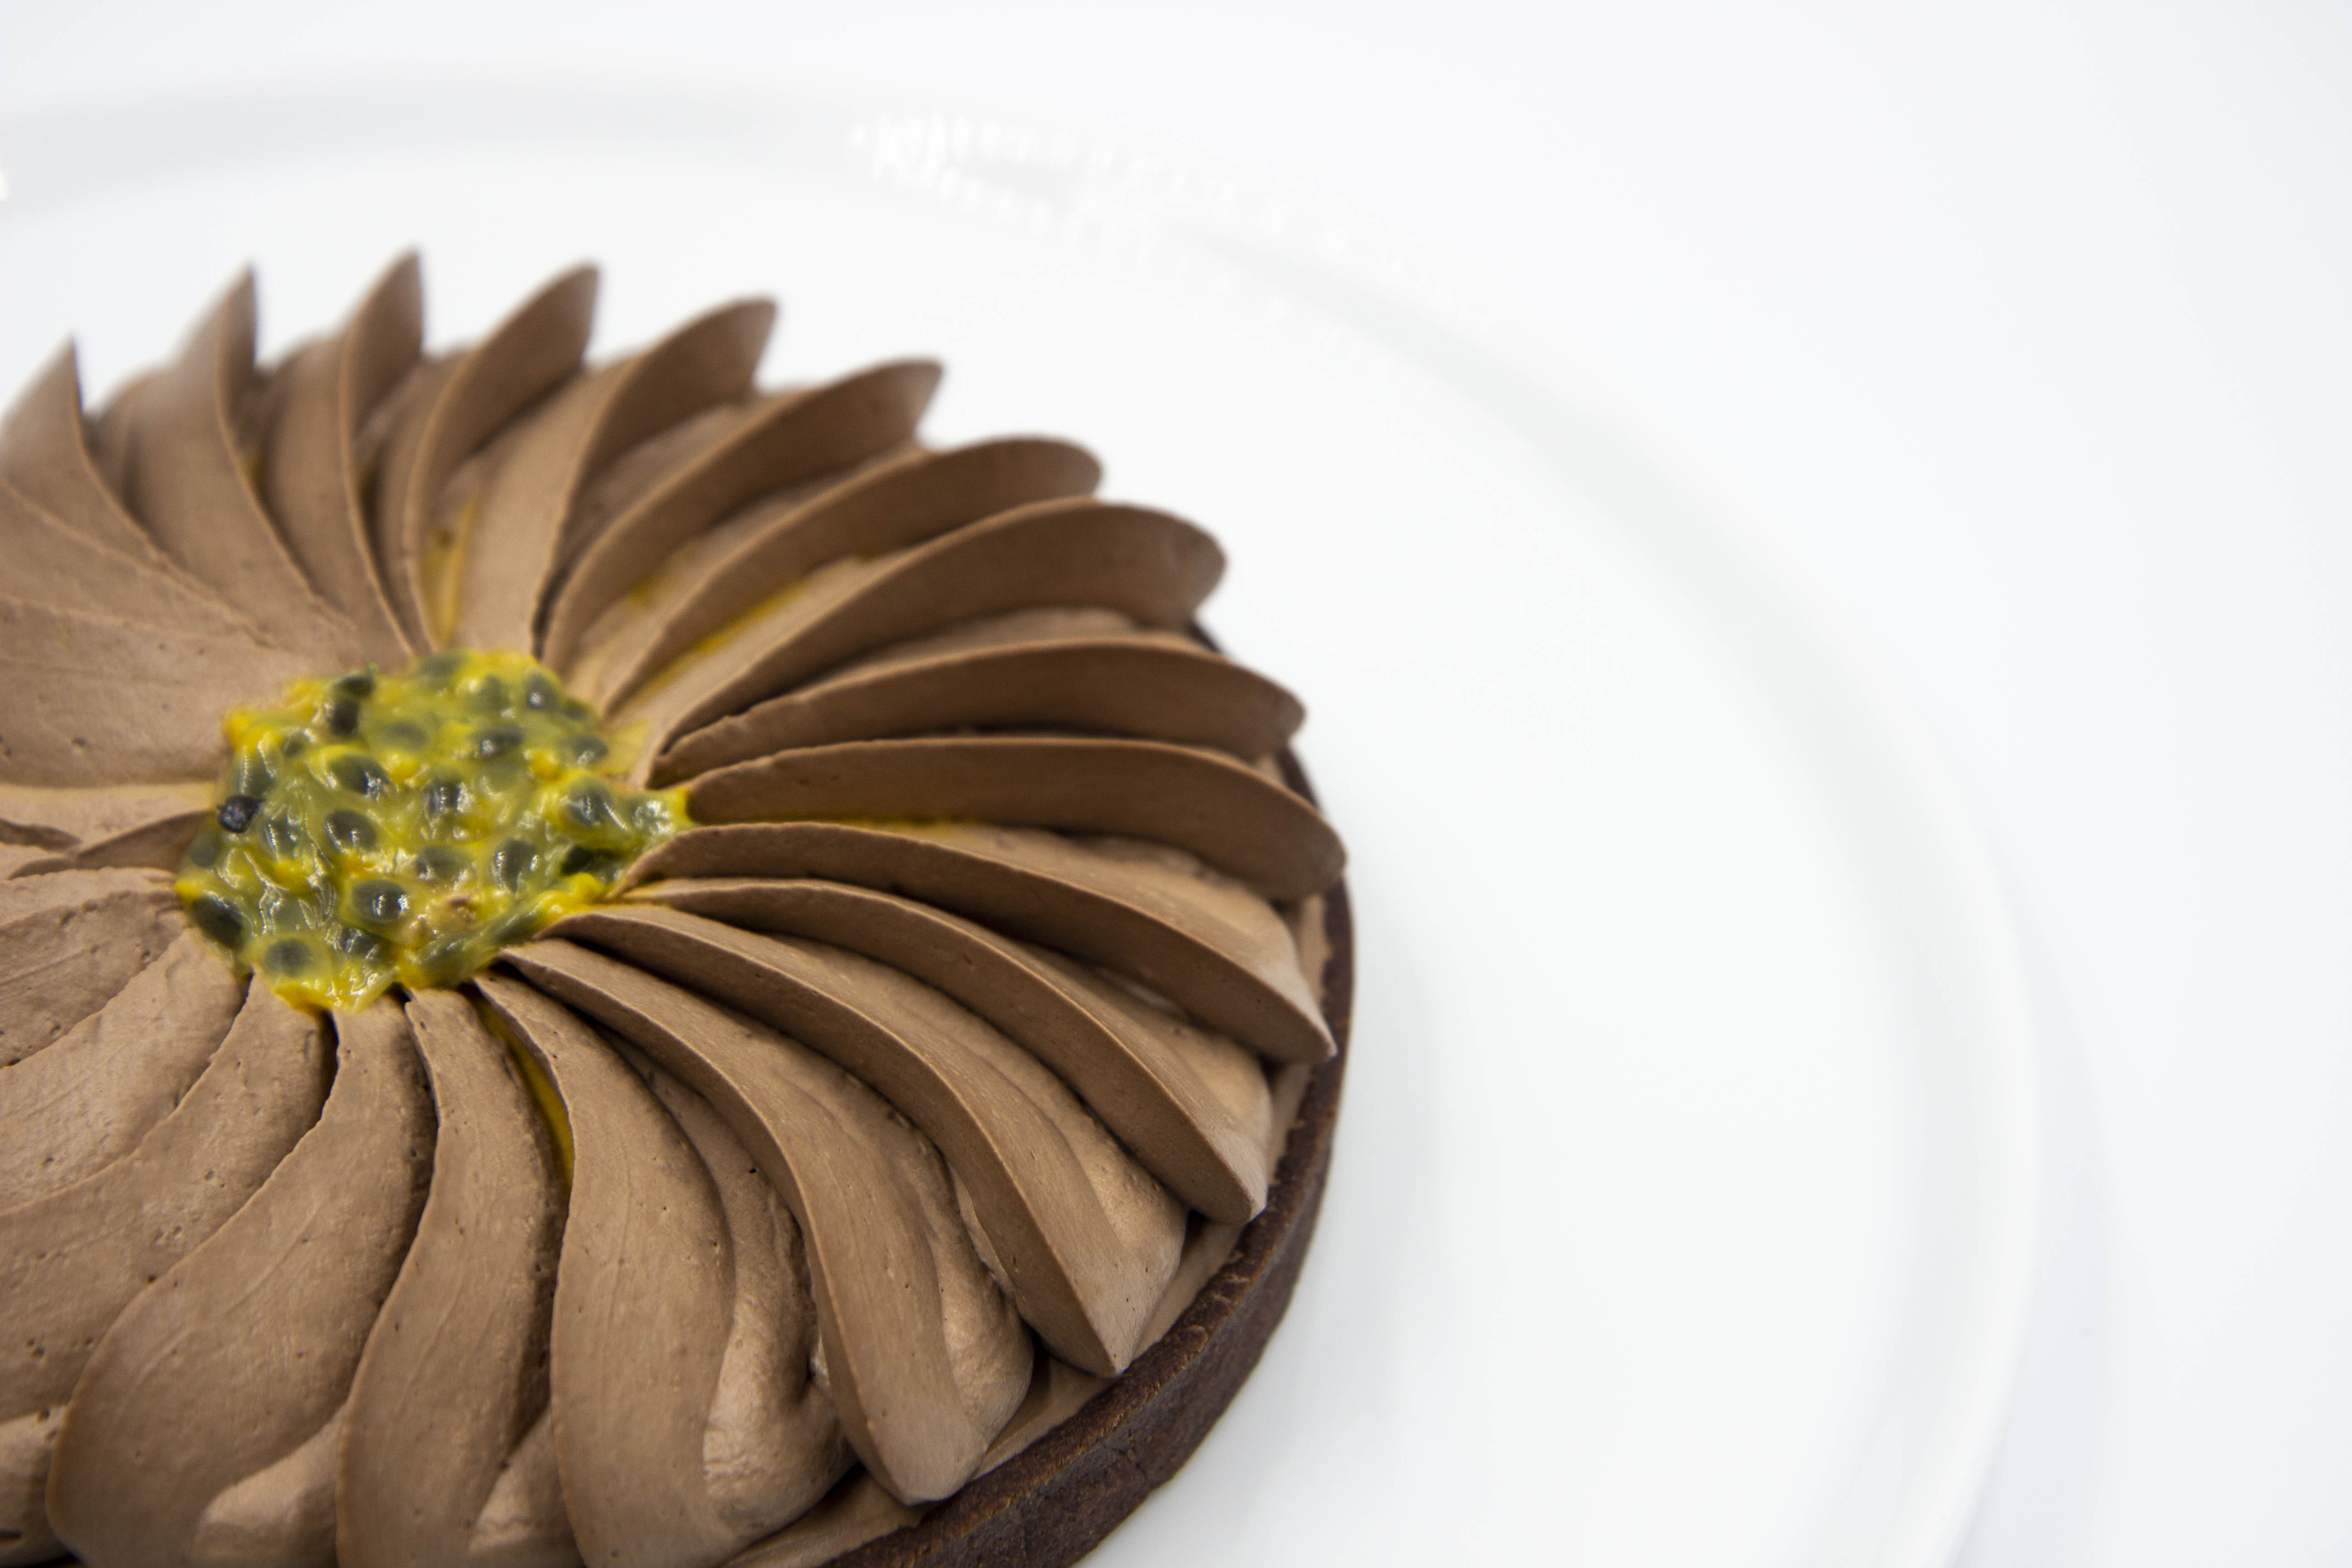 Le Cordon Bleu Day Recipe - Tropical Chocolate Tart